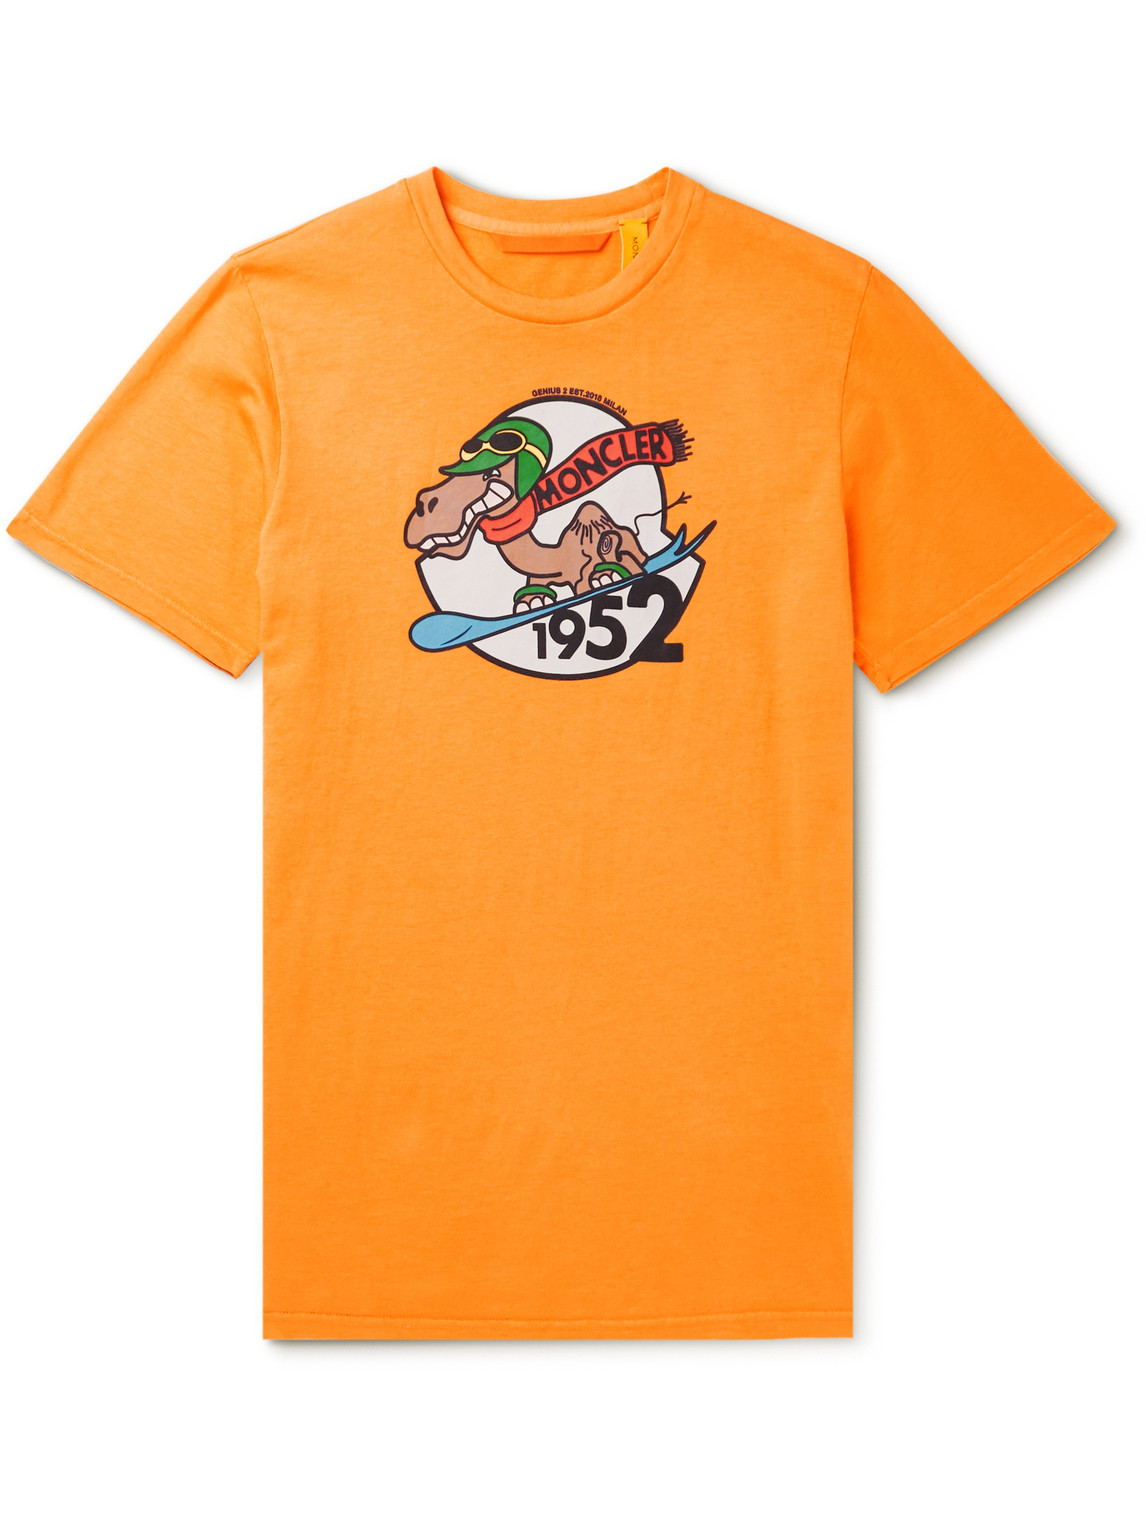 Moncler Genius 2 Moncler 1952 Garment-dyed Printed Cotton-jersey T-shirt In Orange